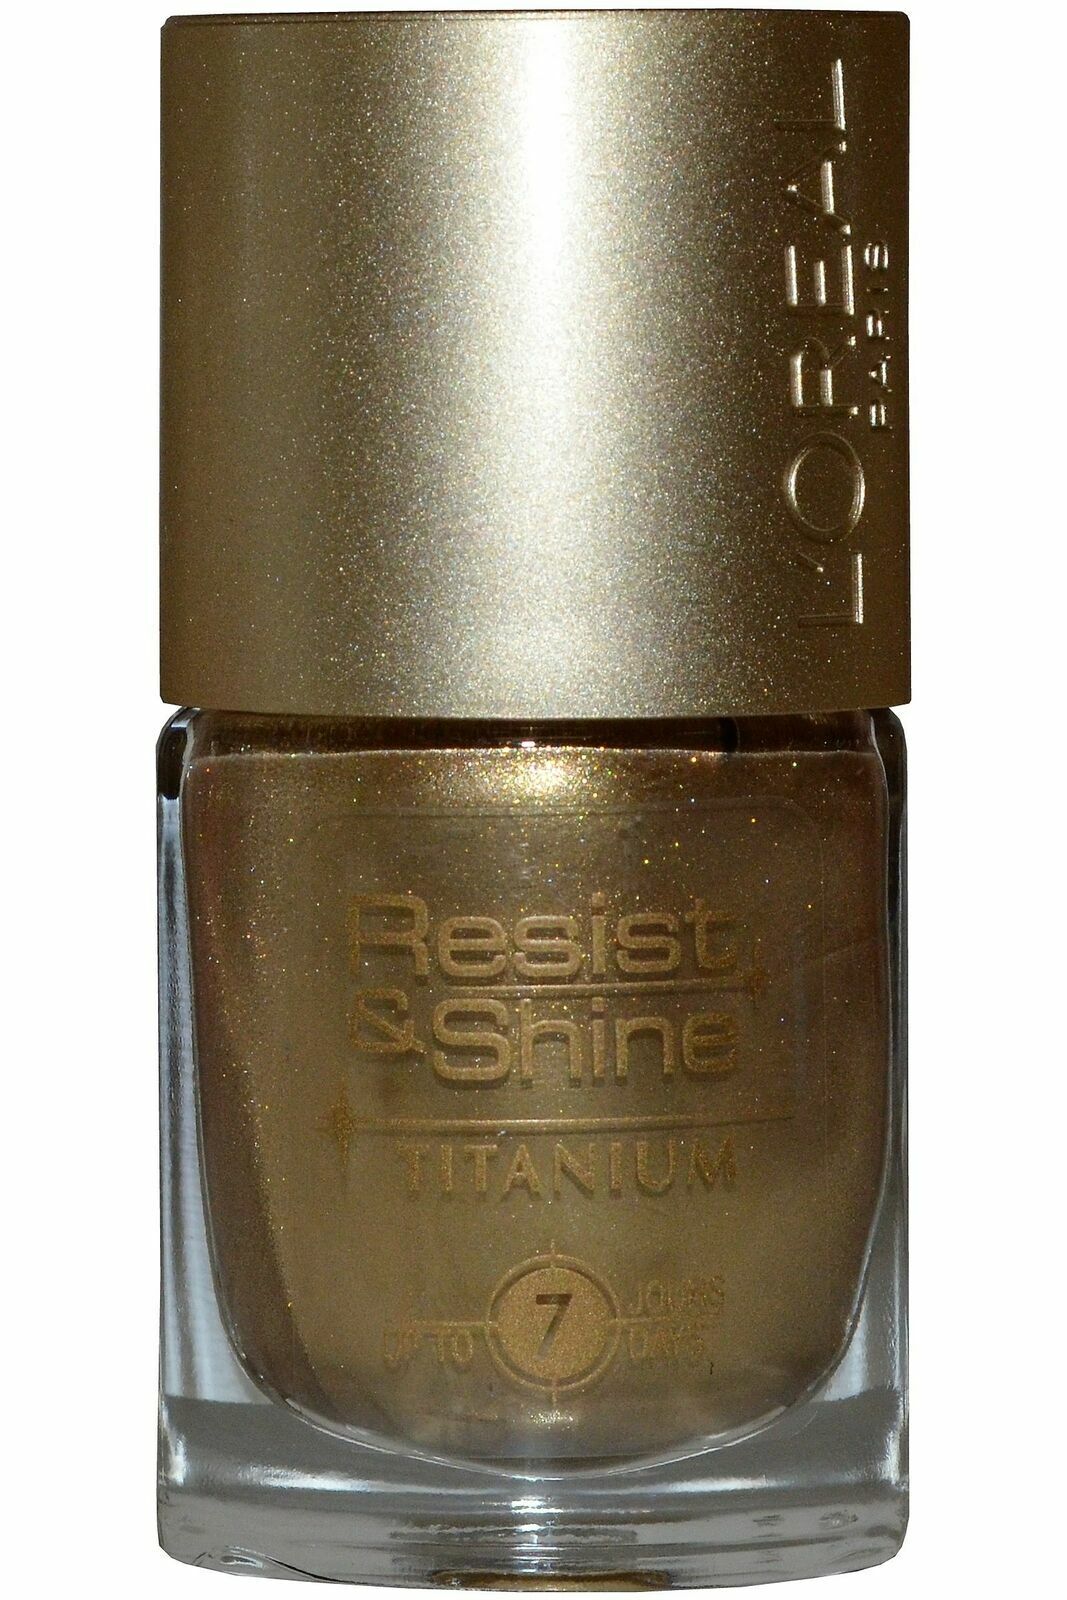 L'Oreal L'oreal Resist and Shine Titanium Nail Polish, Various Shades, 9ml